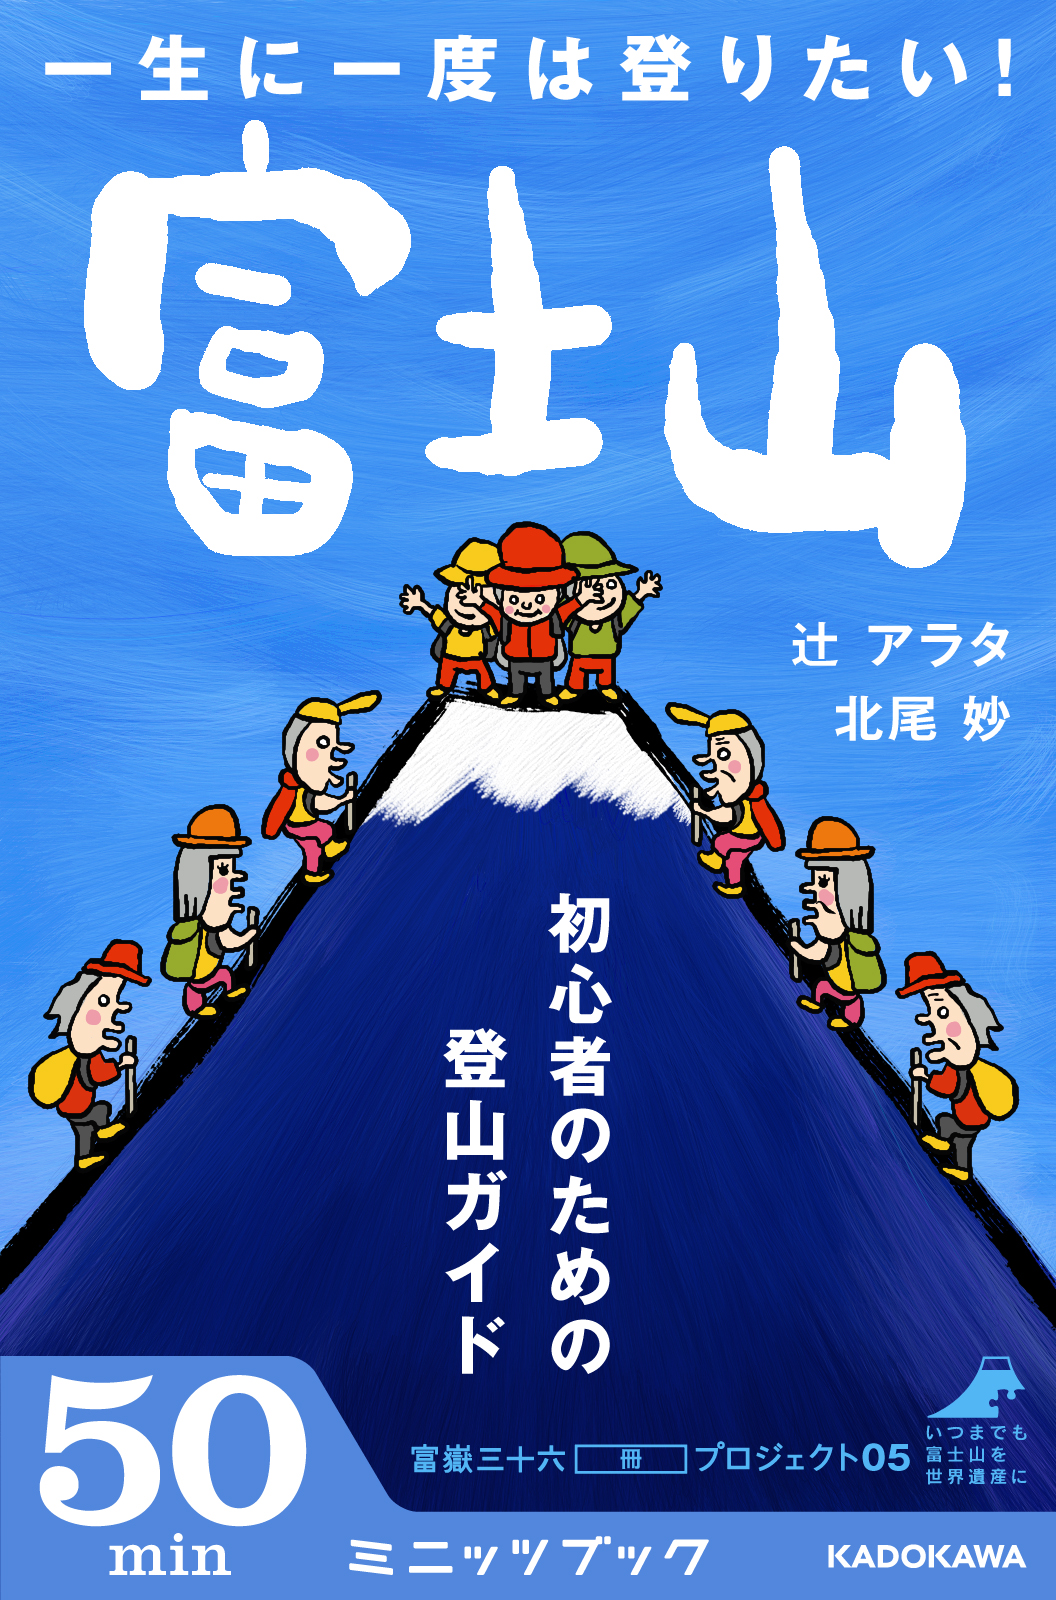 日本人なら一生に一度は登りたい 世界遺産 富士山 登頂までの７つのステップ 株式会社ブックウォーカーのプレスリリース